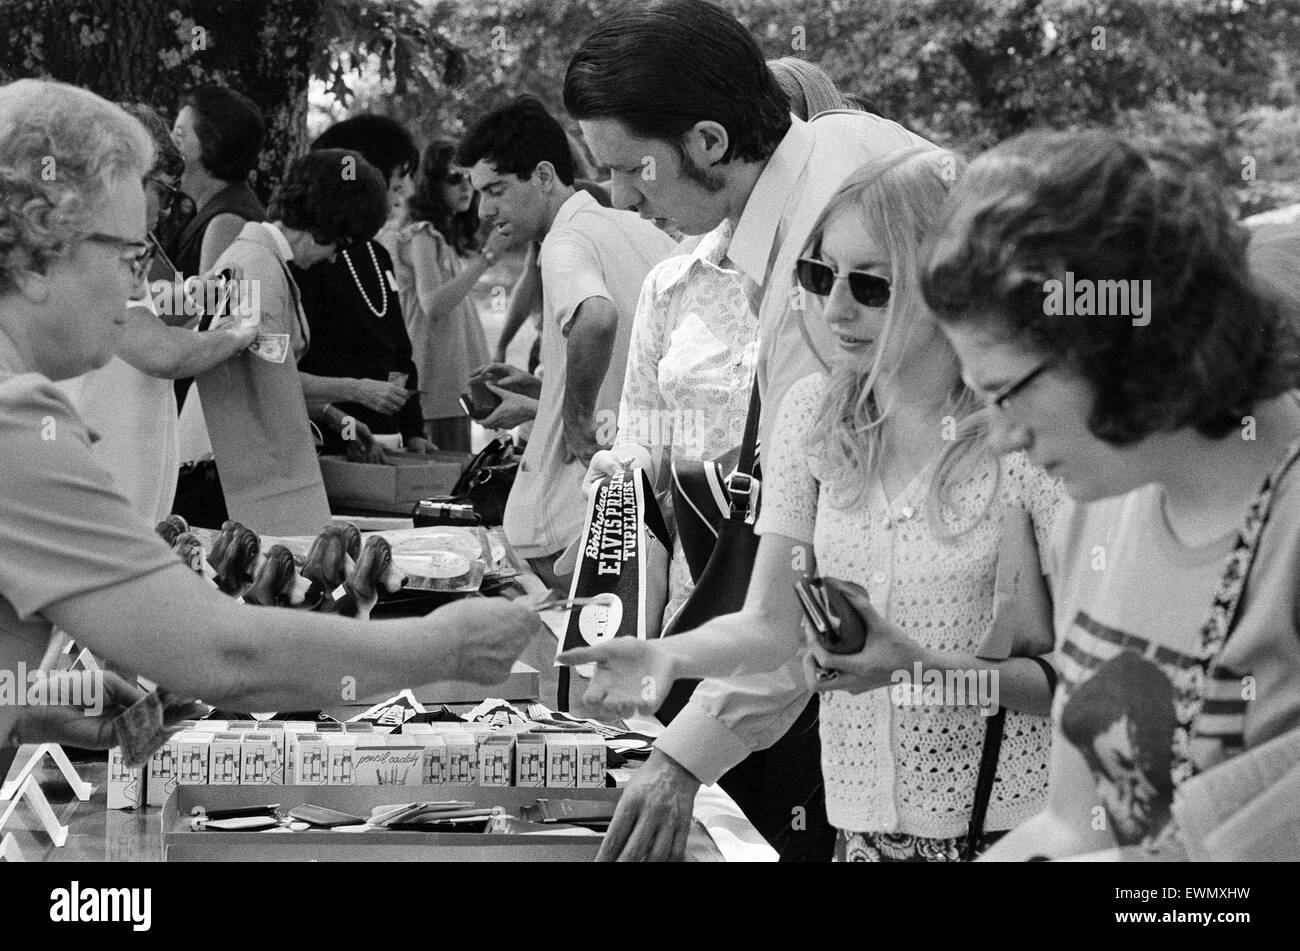 Los fans de Elvis Presley desde Gran Bretaña, Holanda y Dinamarca navegar y comprar souvenirs durante la visita a su casa y su lugar de nacimiento en Tupelo, Lee County, Mississippi, Estados Unidos, 27 de agosto de 1973. Supervisados por las Damas de Tupelo. Foto de stock